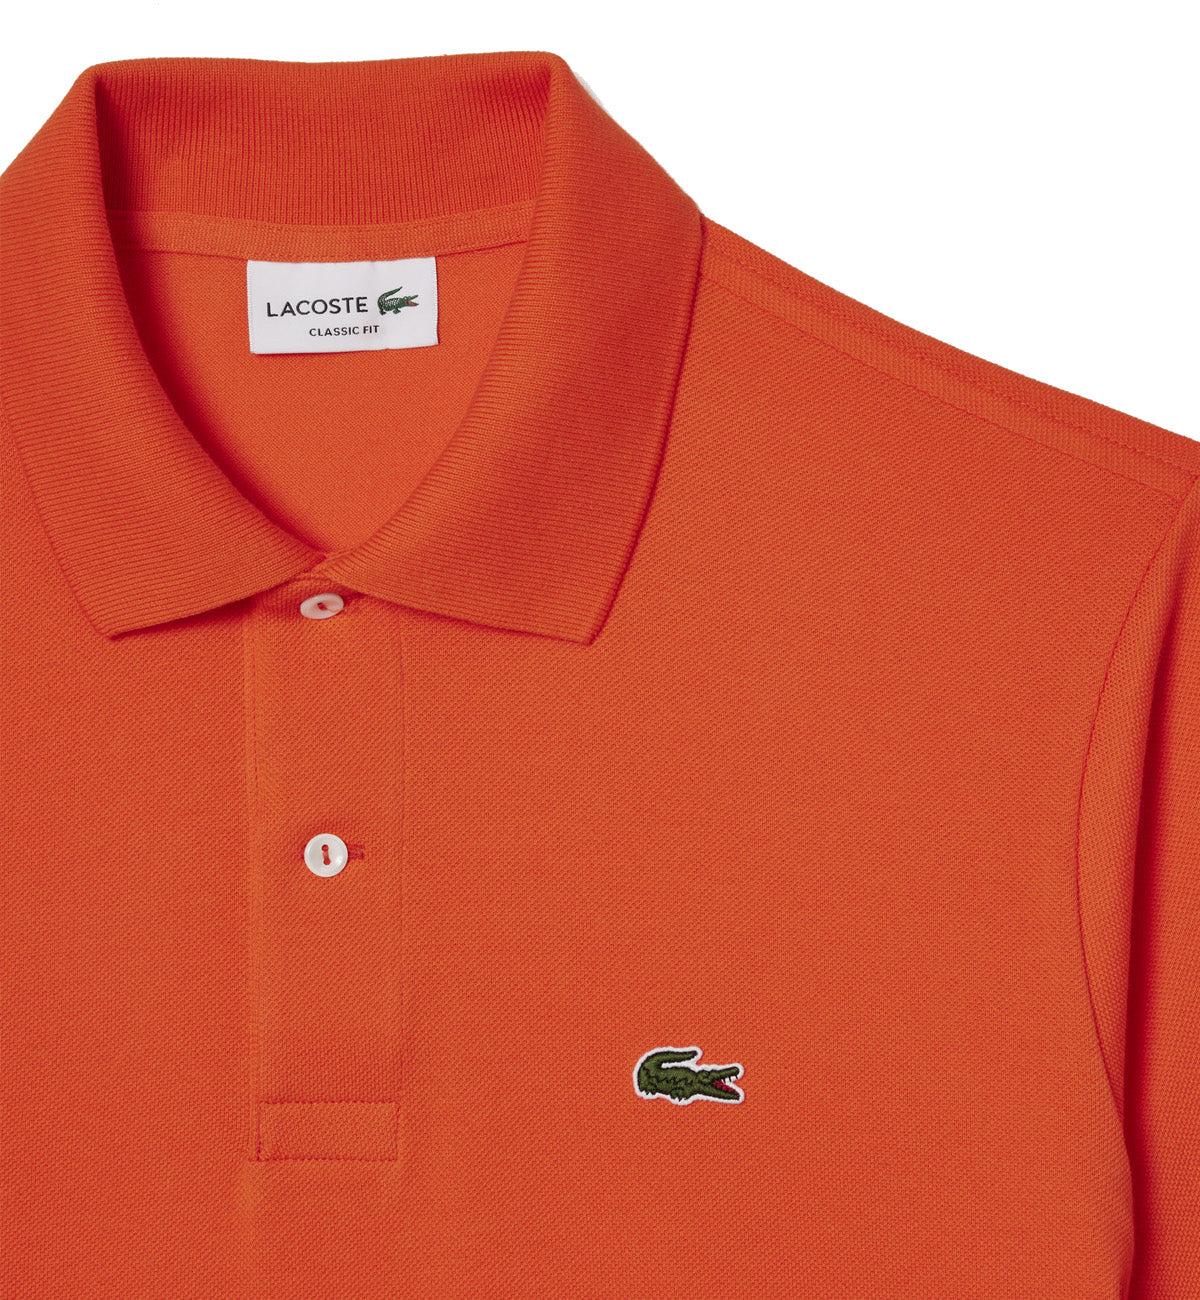 Lacoste Classic Fit Cotton Polo Shirt (Orange)